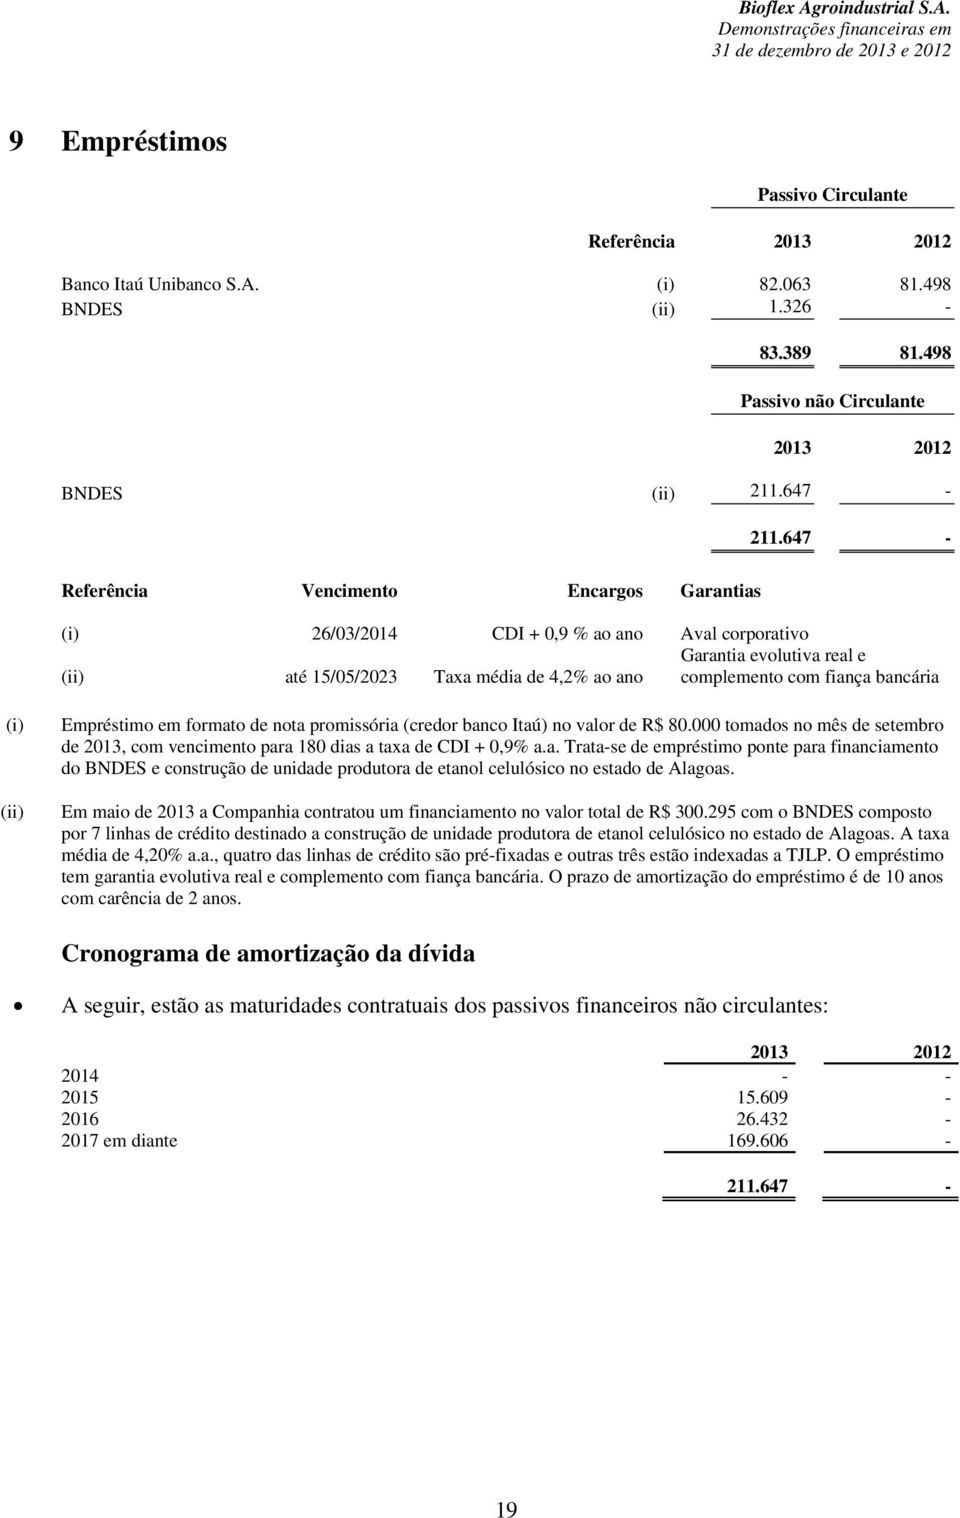 bancária (i) (ii) Empréstimo em formato de nota promissória (credor banco Itaú) no valor de R$ 80.000 tomados no mês de setembro de 2013, com vencimento para 180 dias a taxa de CDI + 0,9% a.a. Trata-se de empréstimo ponte para financiamento do BNDES e construção de unidade produtora de etanol celulósico no estado de Alagoas.